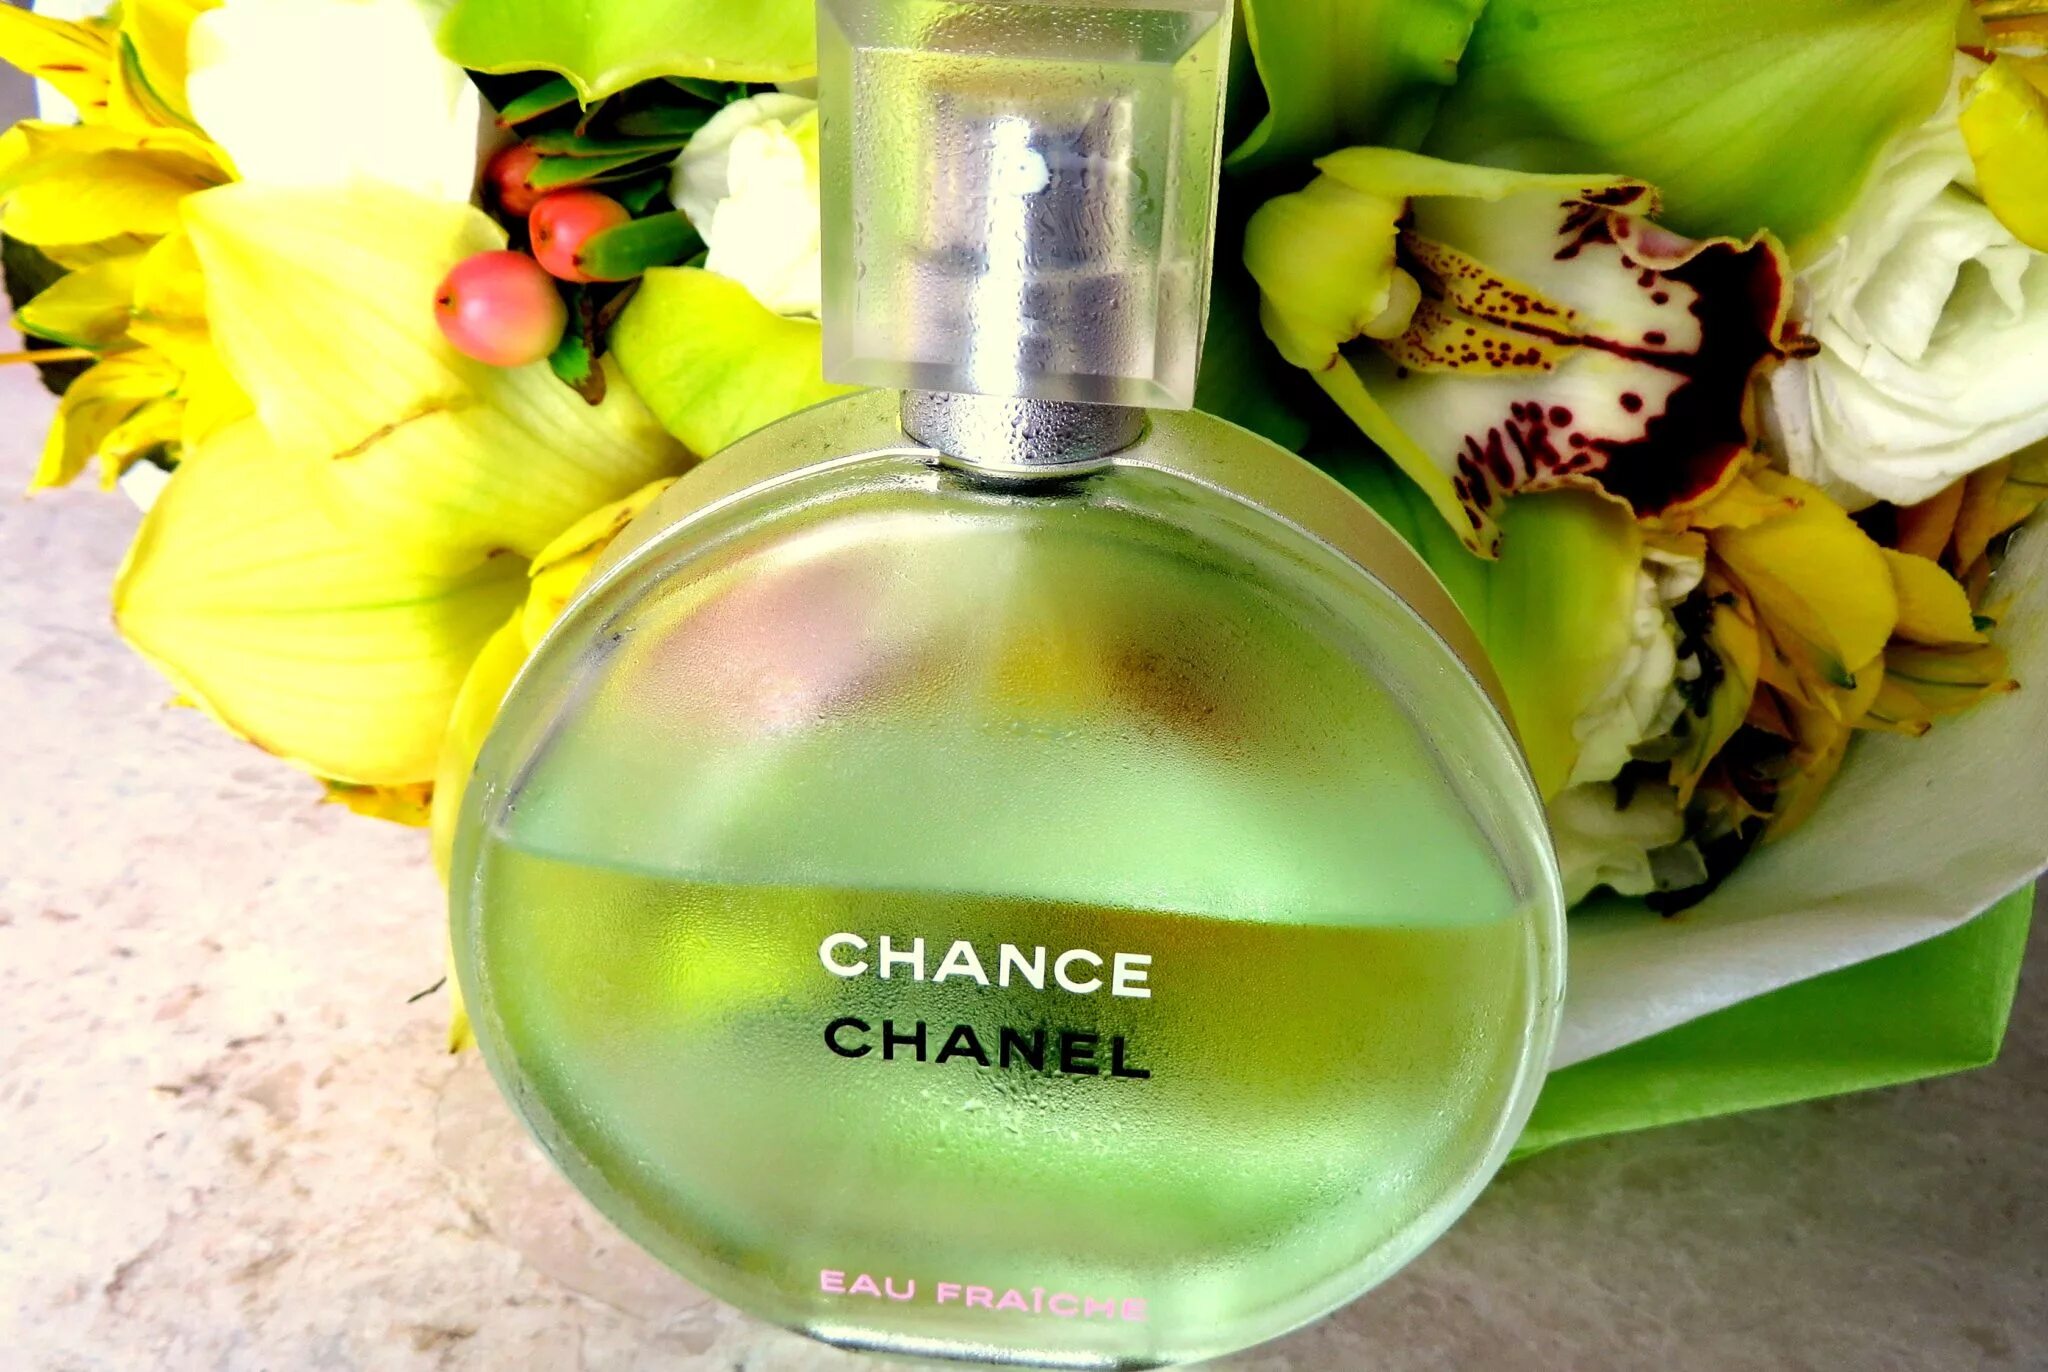 Chanel chance Eau Fraiche EDT 50ml. Chanel - Chanel chance Eau Fraiche. Chanel chance Eau Fraiche 100. Chanel chance Eau Fraiche women.